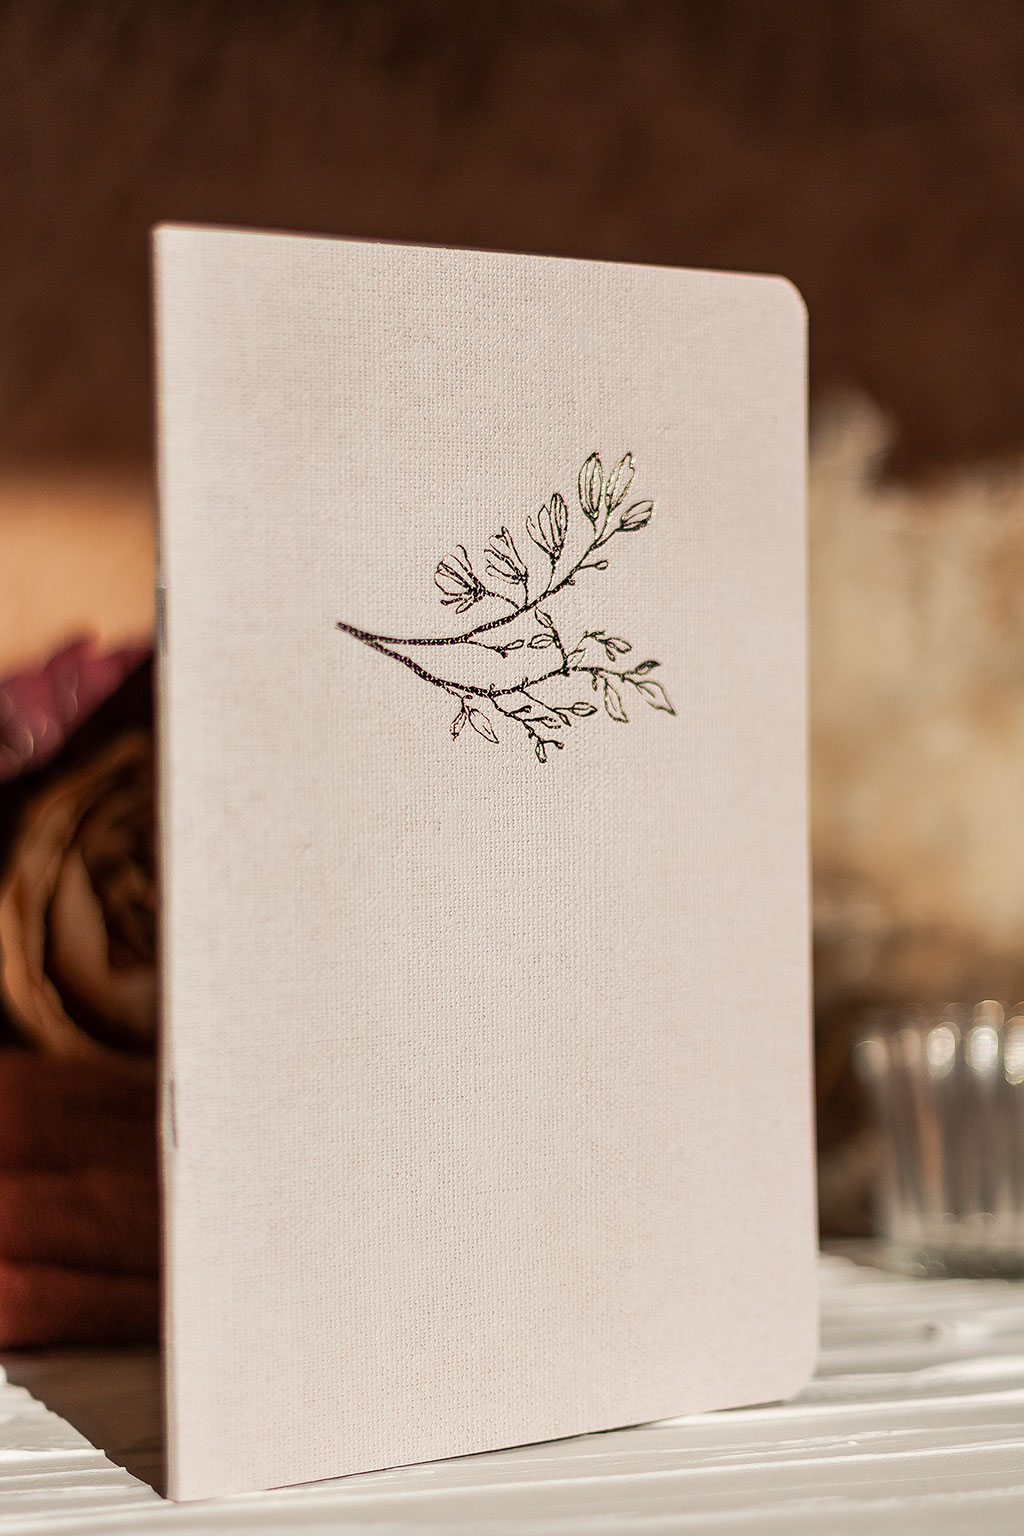 Vászonfelületű kartonból készített füzet arany virággal prégelve: A/5, 64 oldalas, pontozott vonalas, fehér belívvel, sarokkerekített, egyedi paraméterekkel is rendelhető